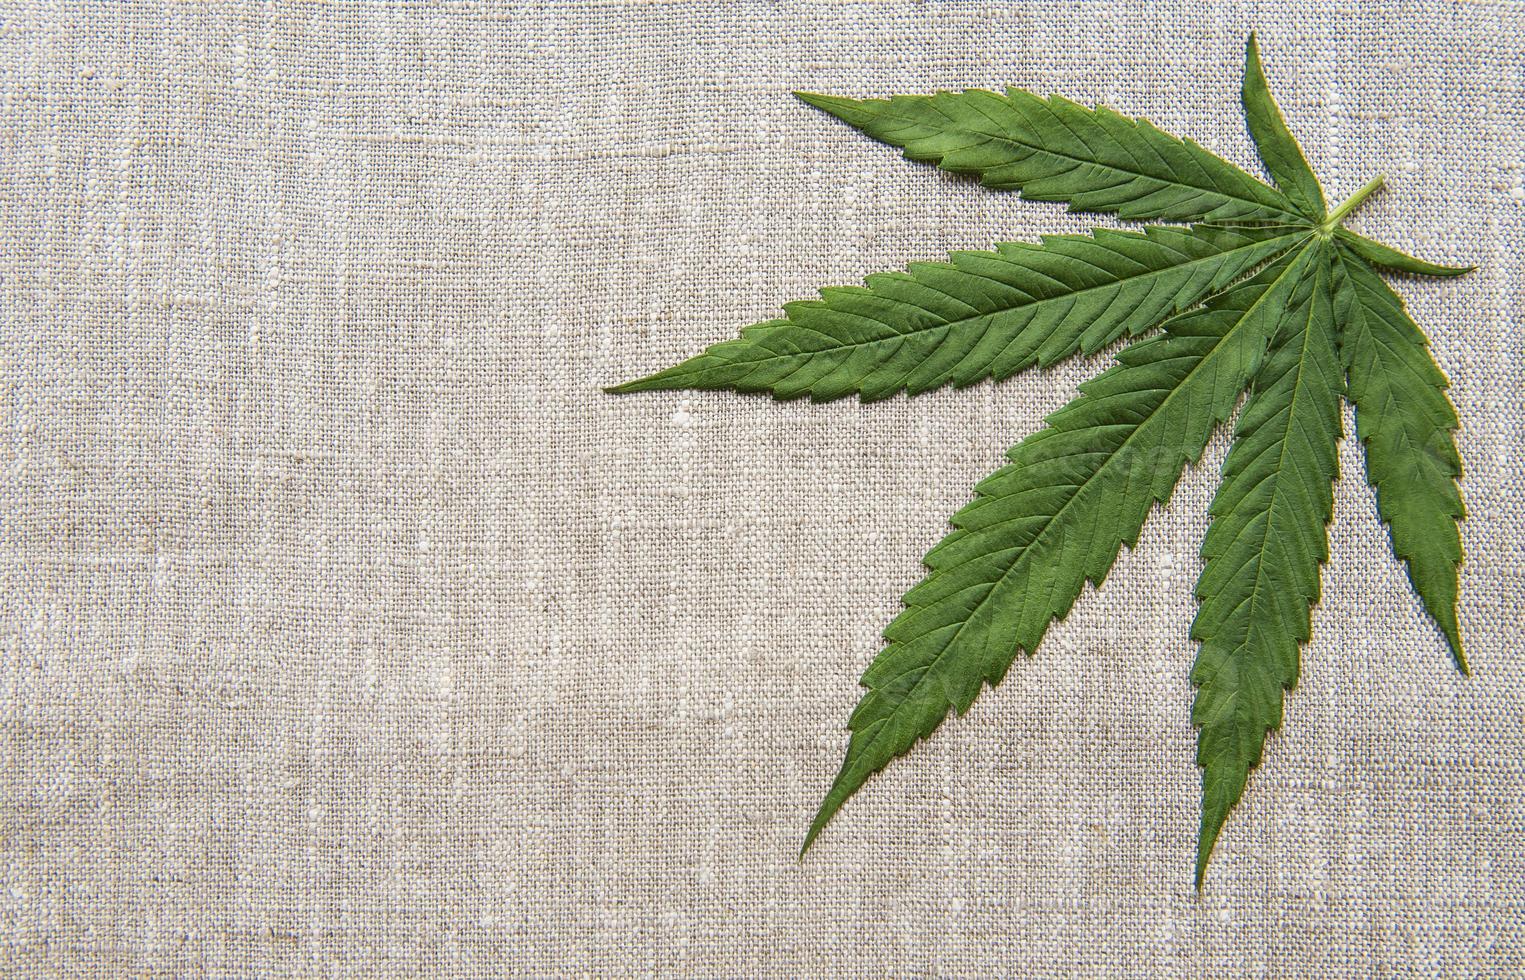 cannabisbladeren op de henneptextielachtergrond foto